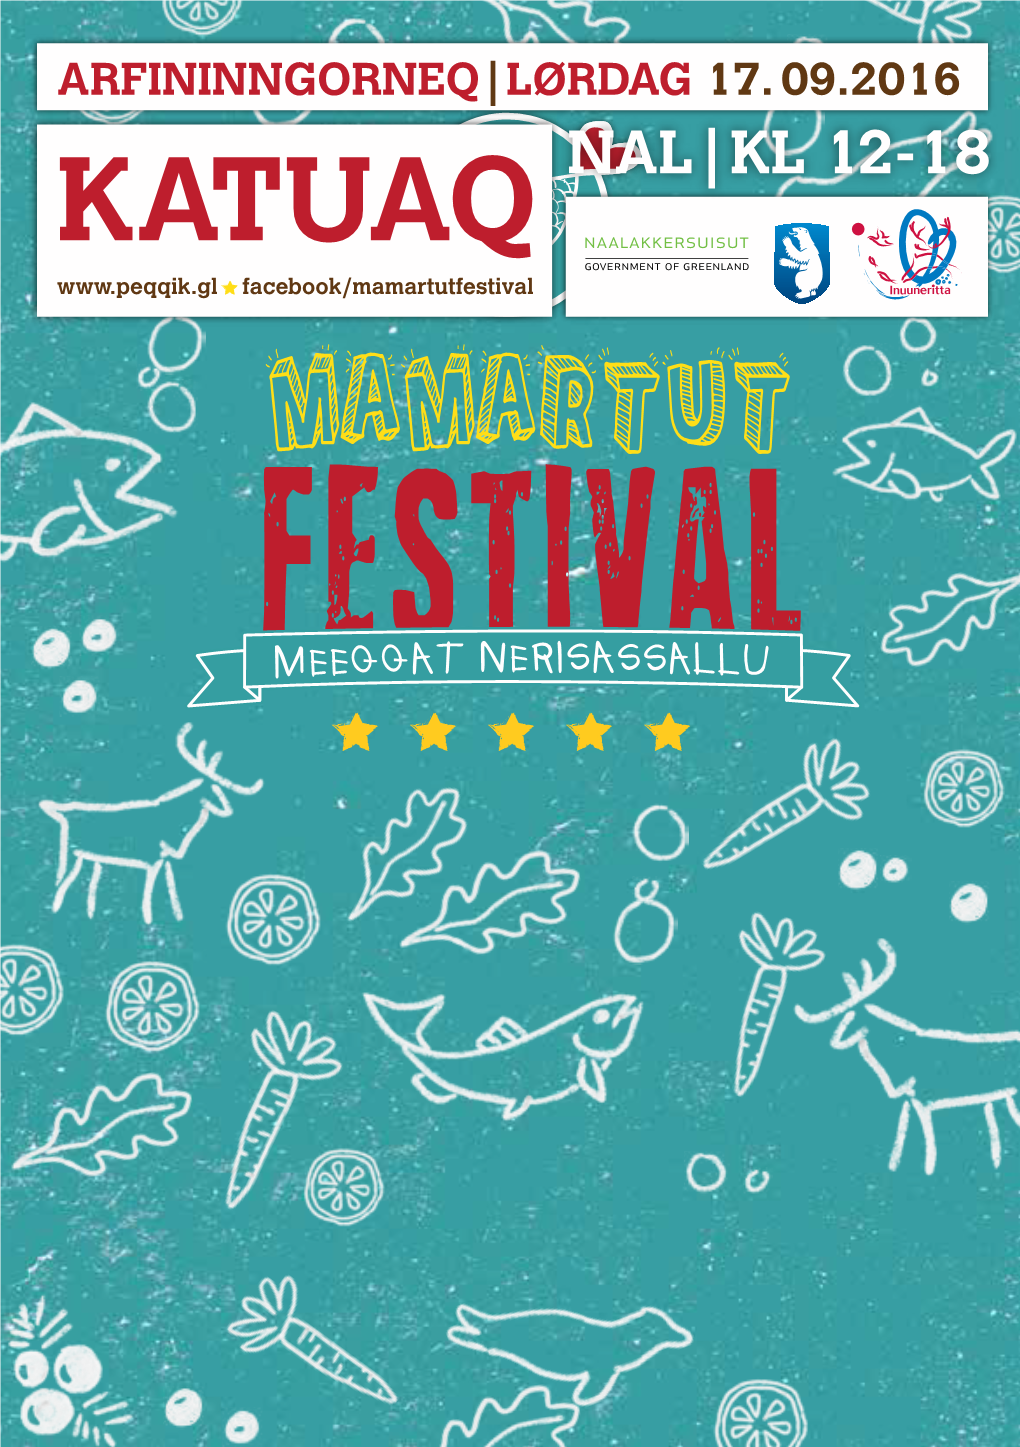 KATUAQ NAL|KL 12-18 Facebook/Mamartutfestival Imai Indhold Tikilluarit Velkommen